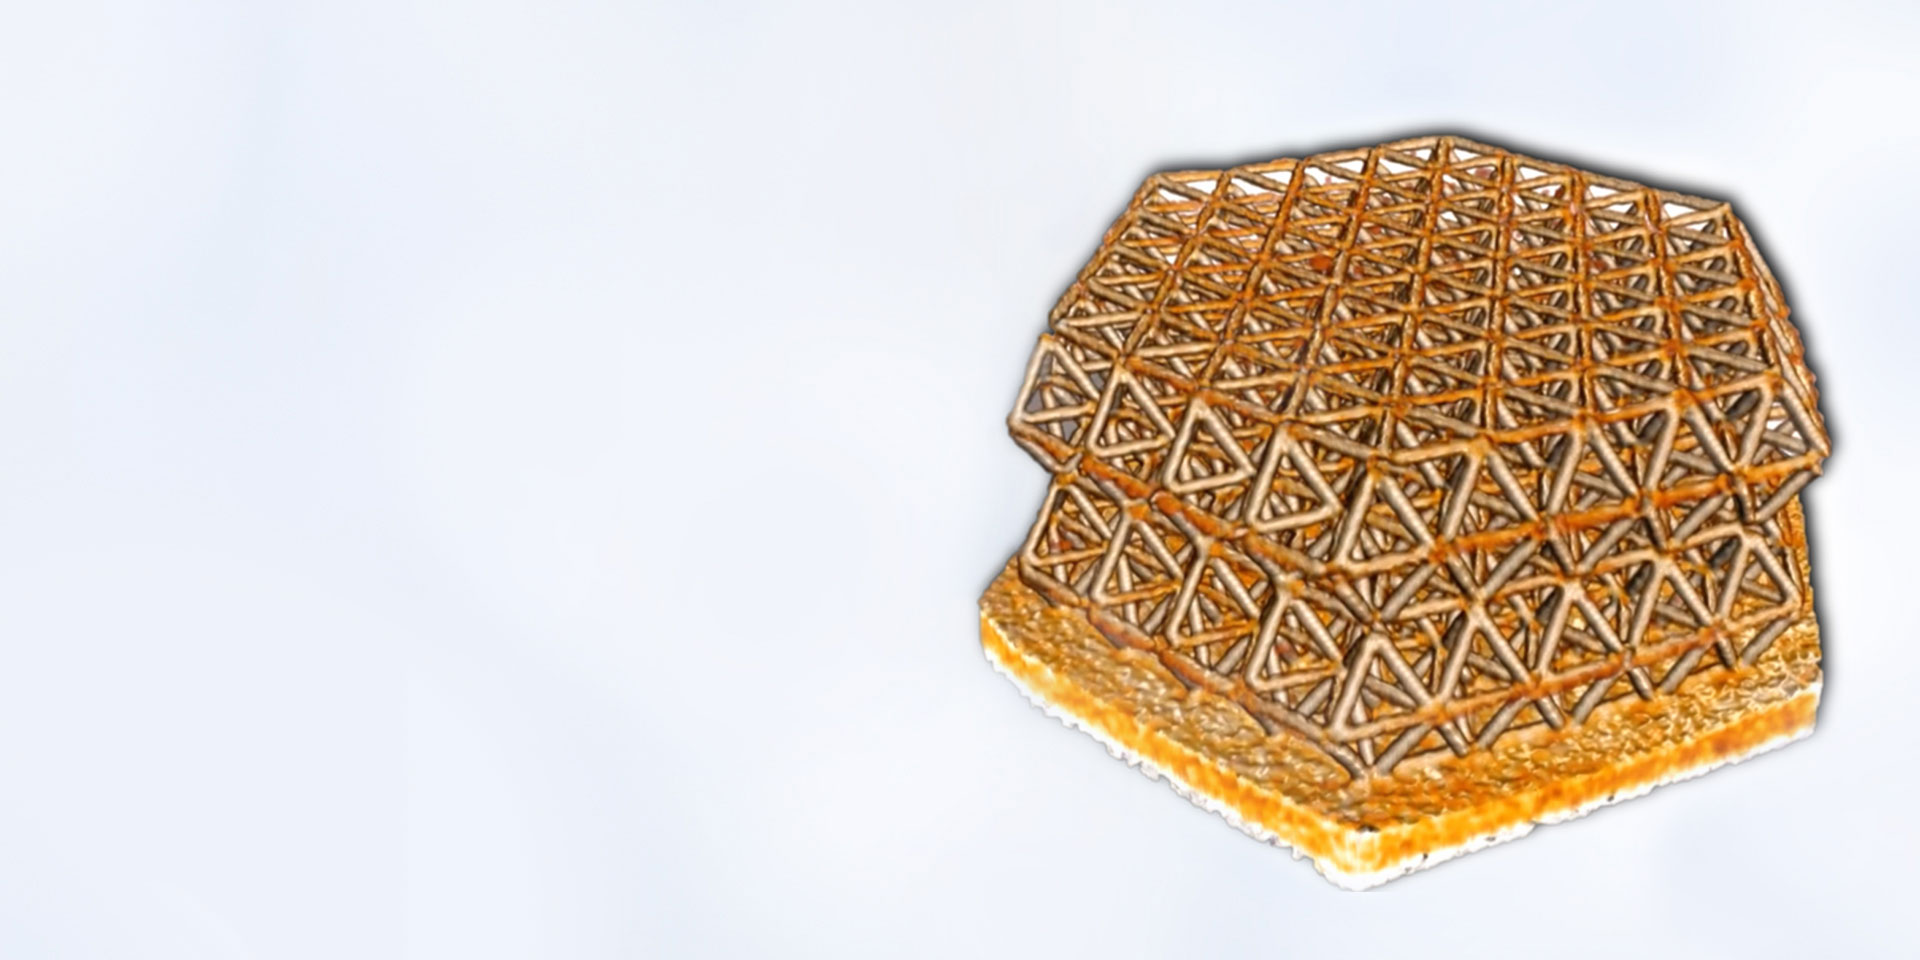 Structure de nanoréseau imprimée en 3D, imagée en contraste de phase Zernike avant les expériences de compression in situ. Avec l'aimable autorisation de : R. Schweiger, KIT, Allemagne (largeur d'échantillon 30 µm).